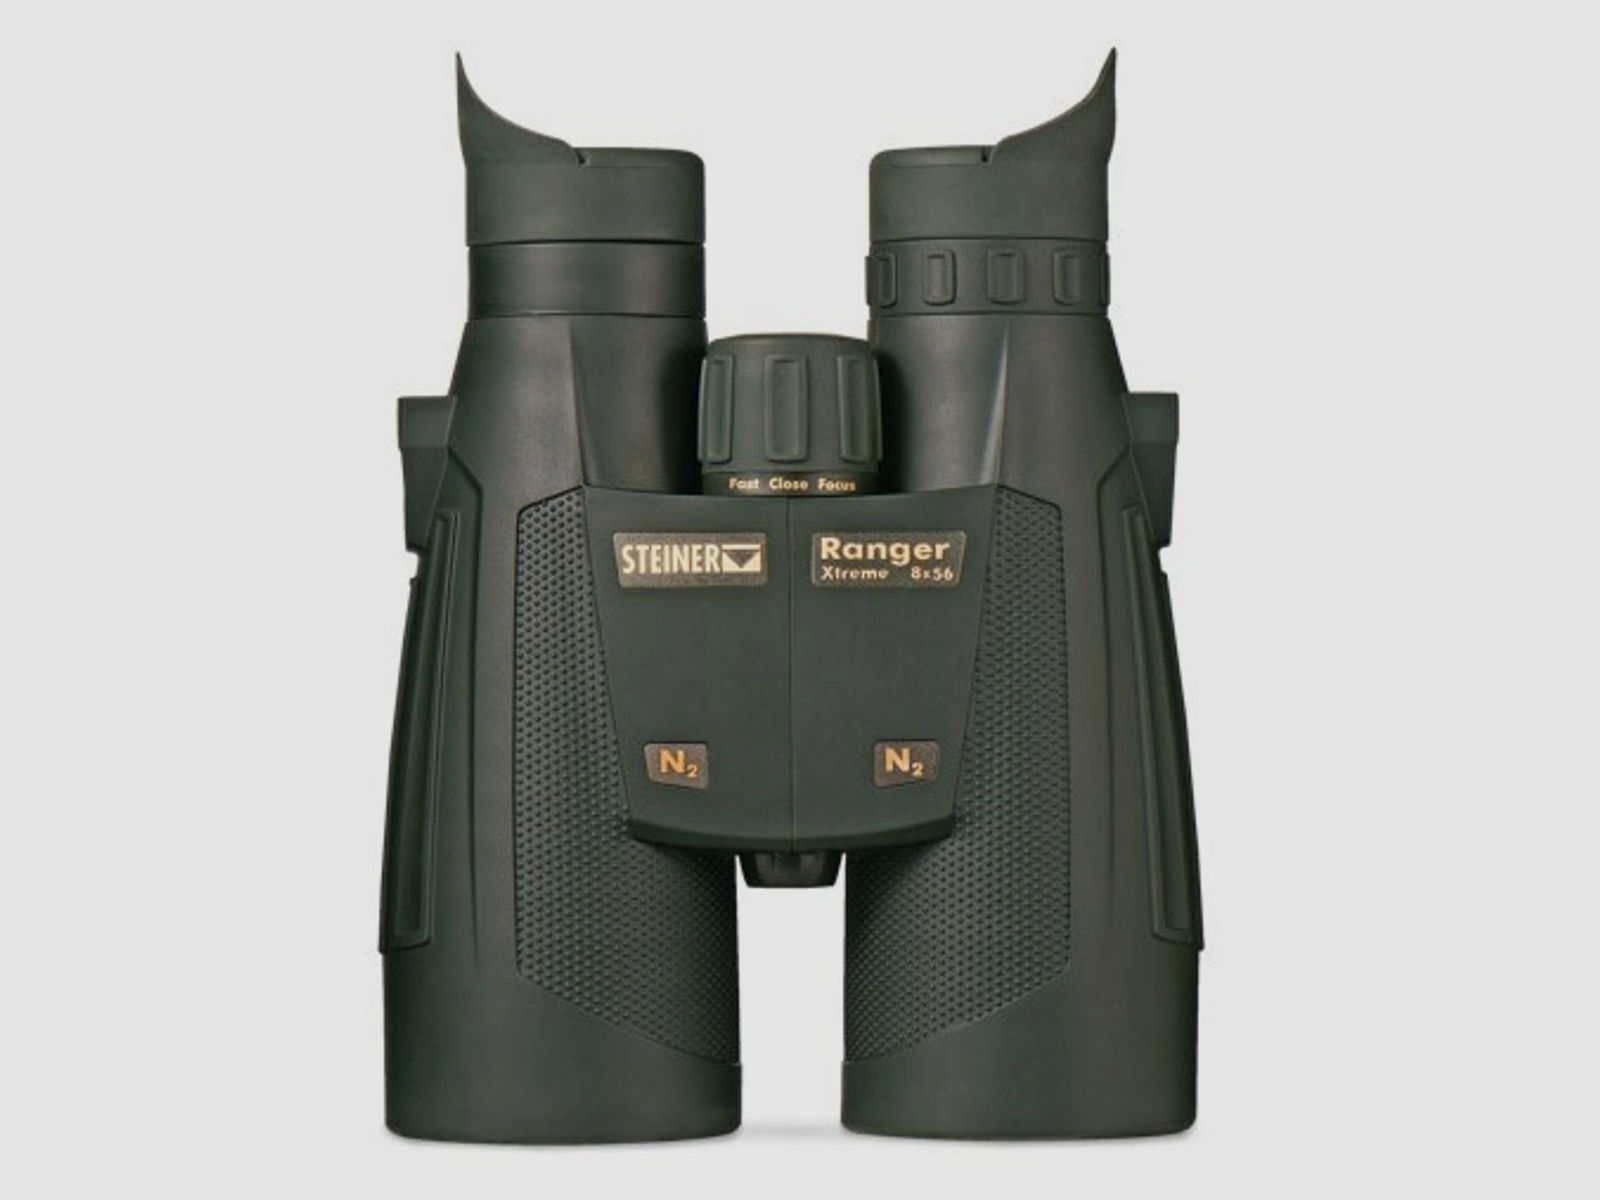 STEINER Ranger Xtreme 8x56 Fernglas mit Tragriemen und Tasche